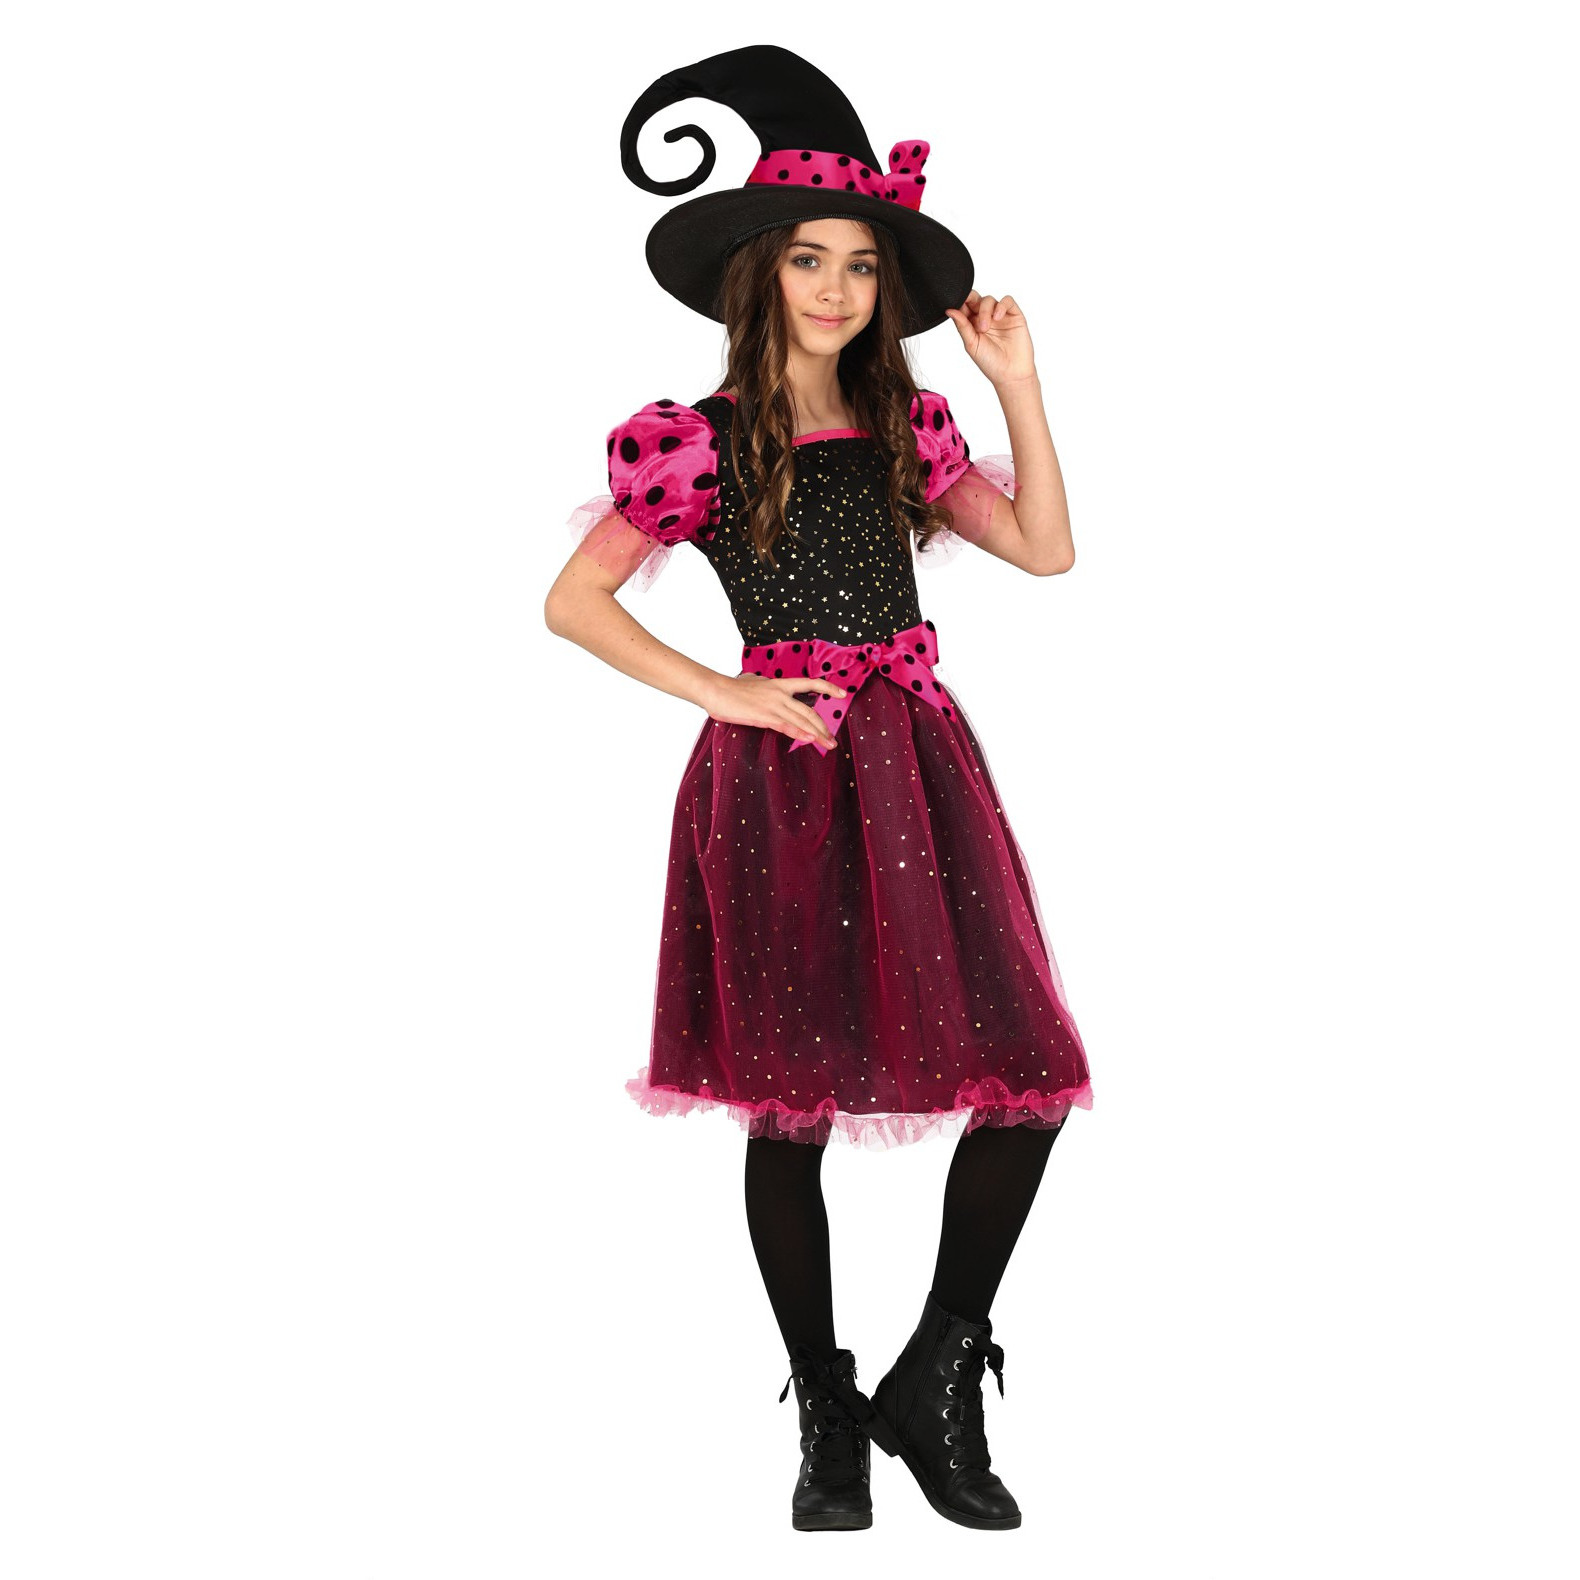 Heksen verkleed kostuum zwart/roze voor meisjes